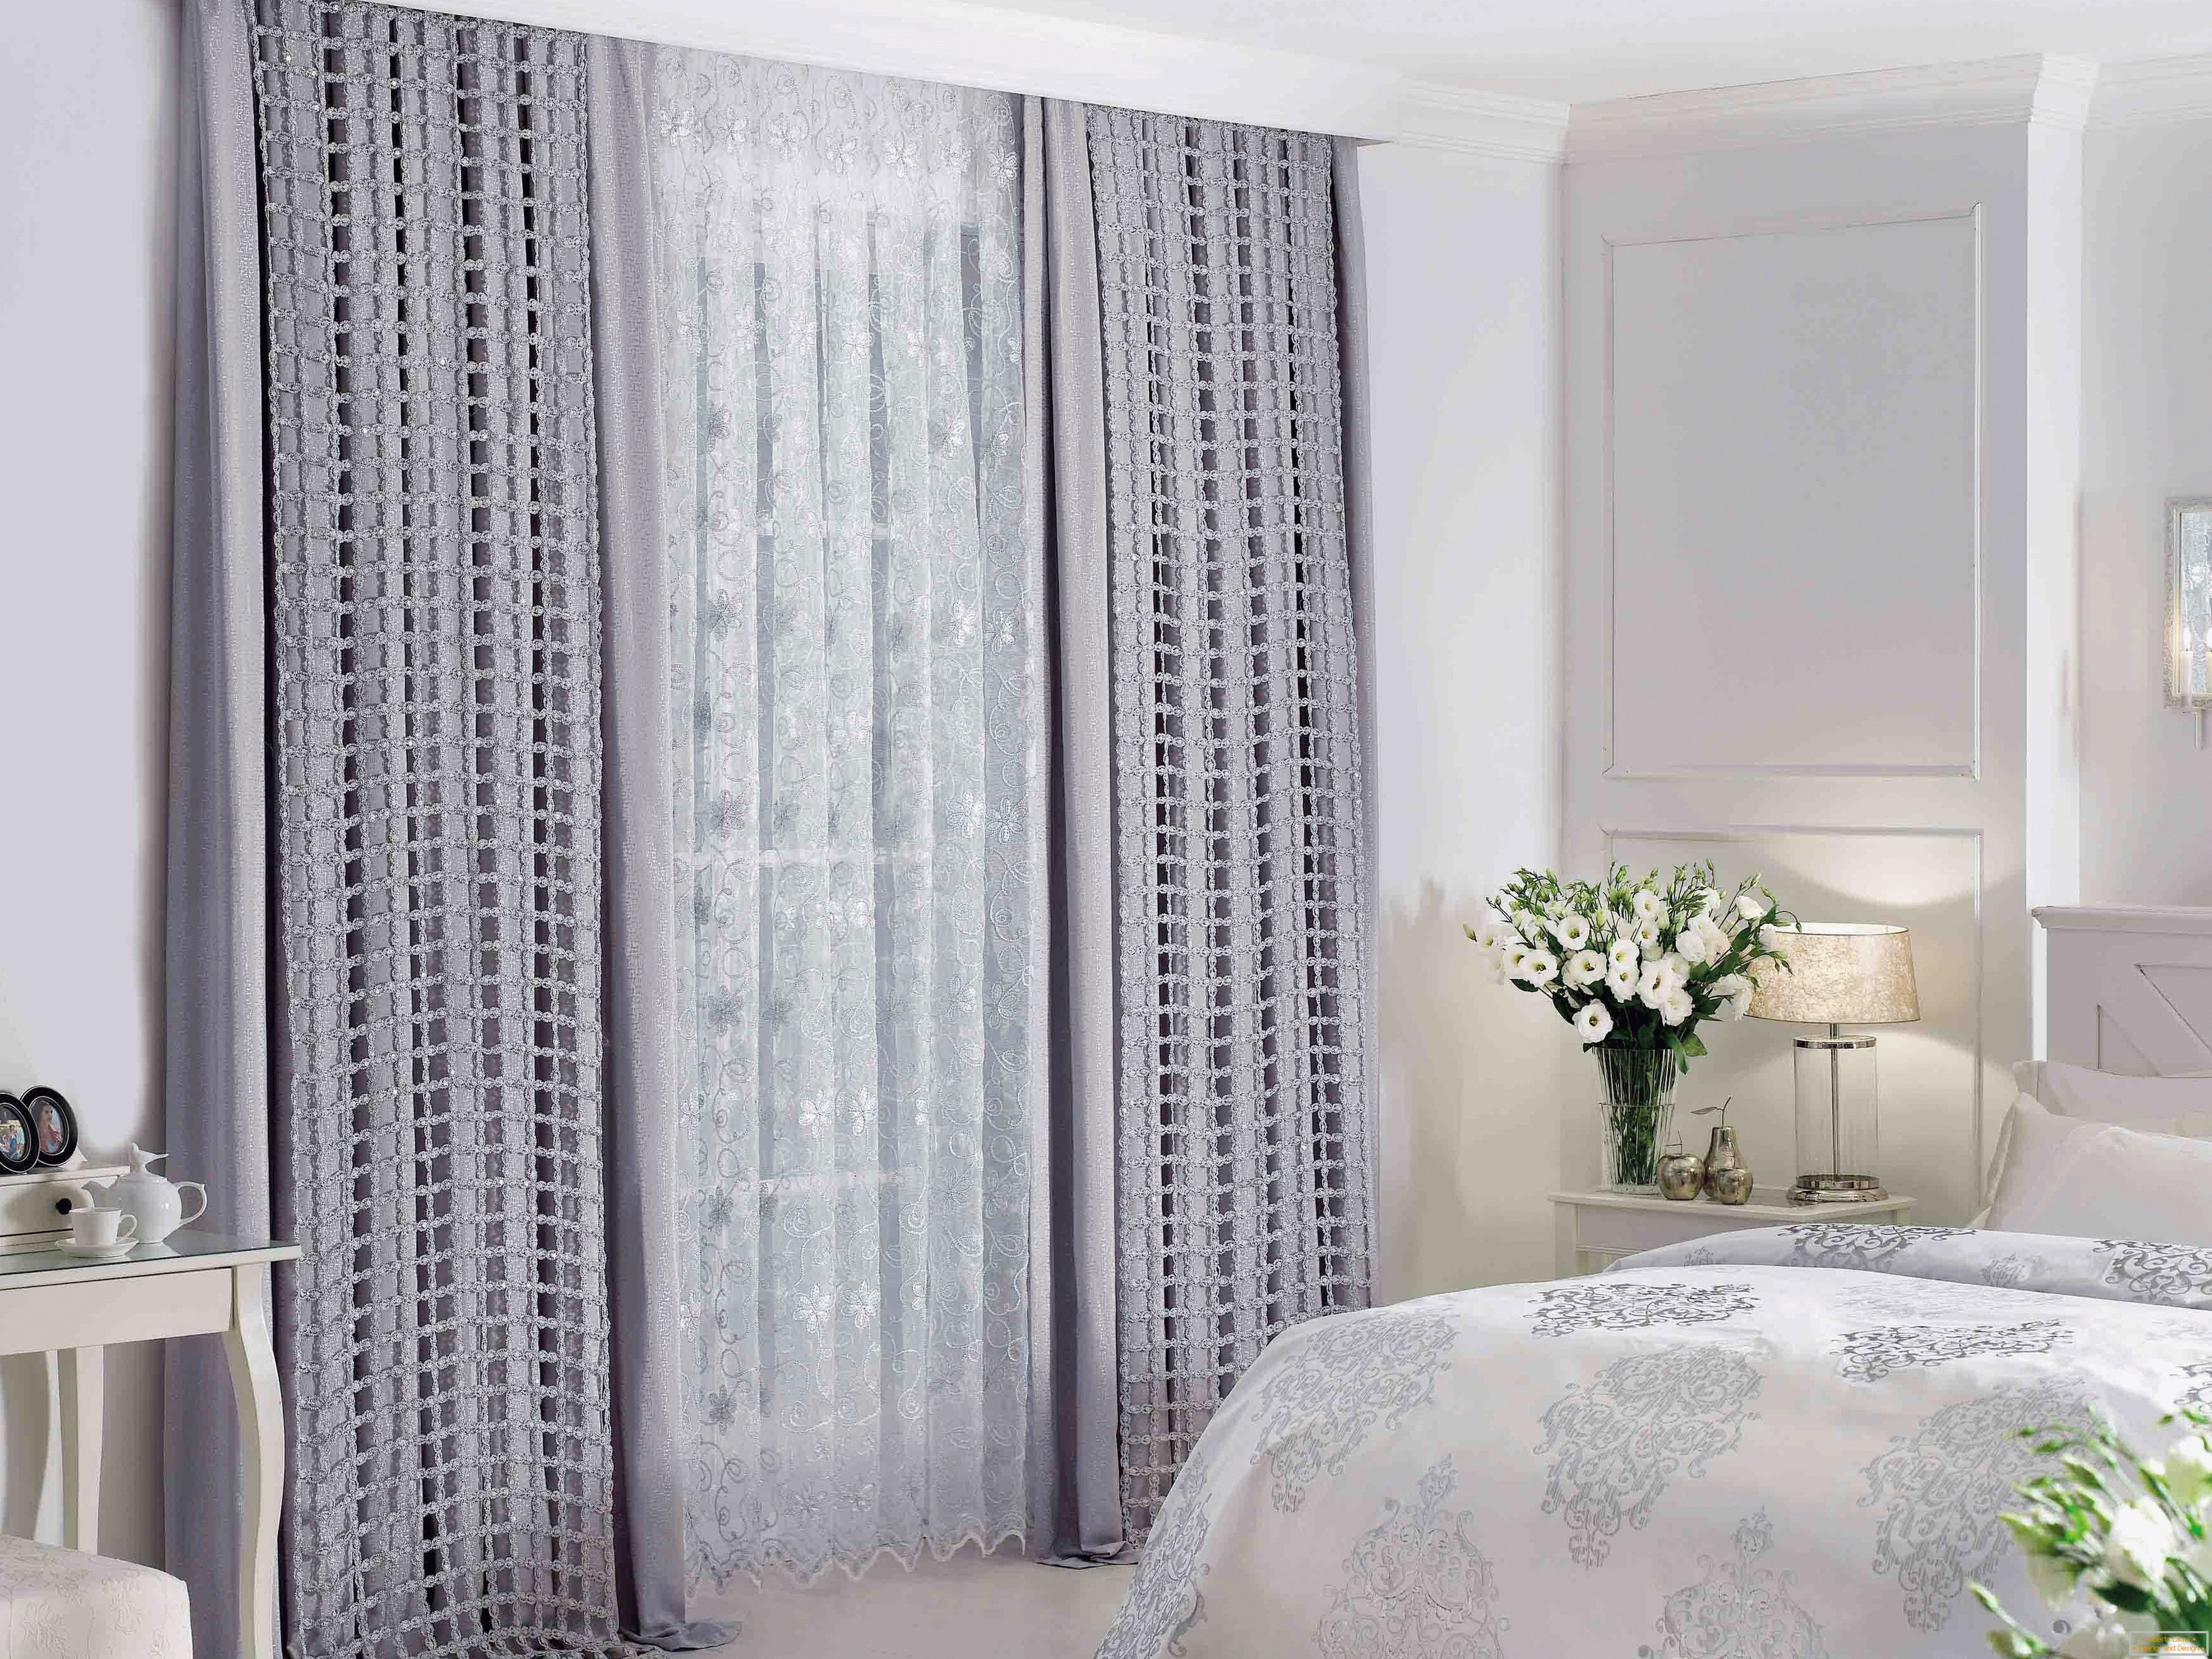 Shiny gray curtains